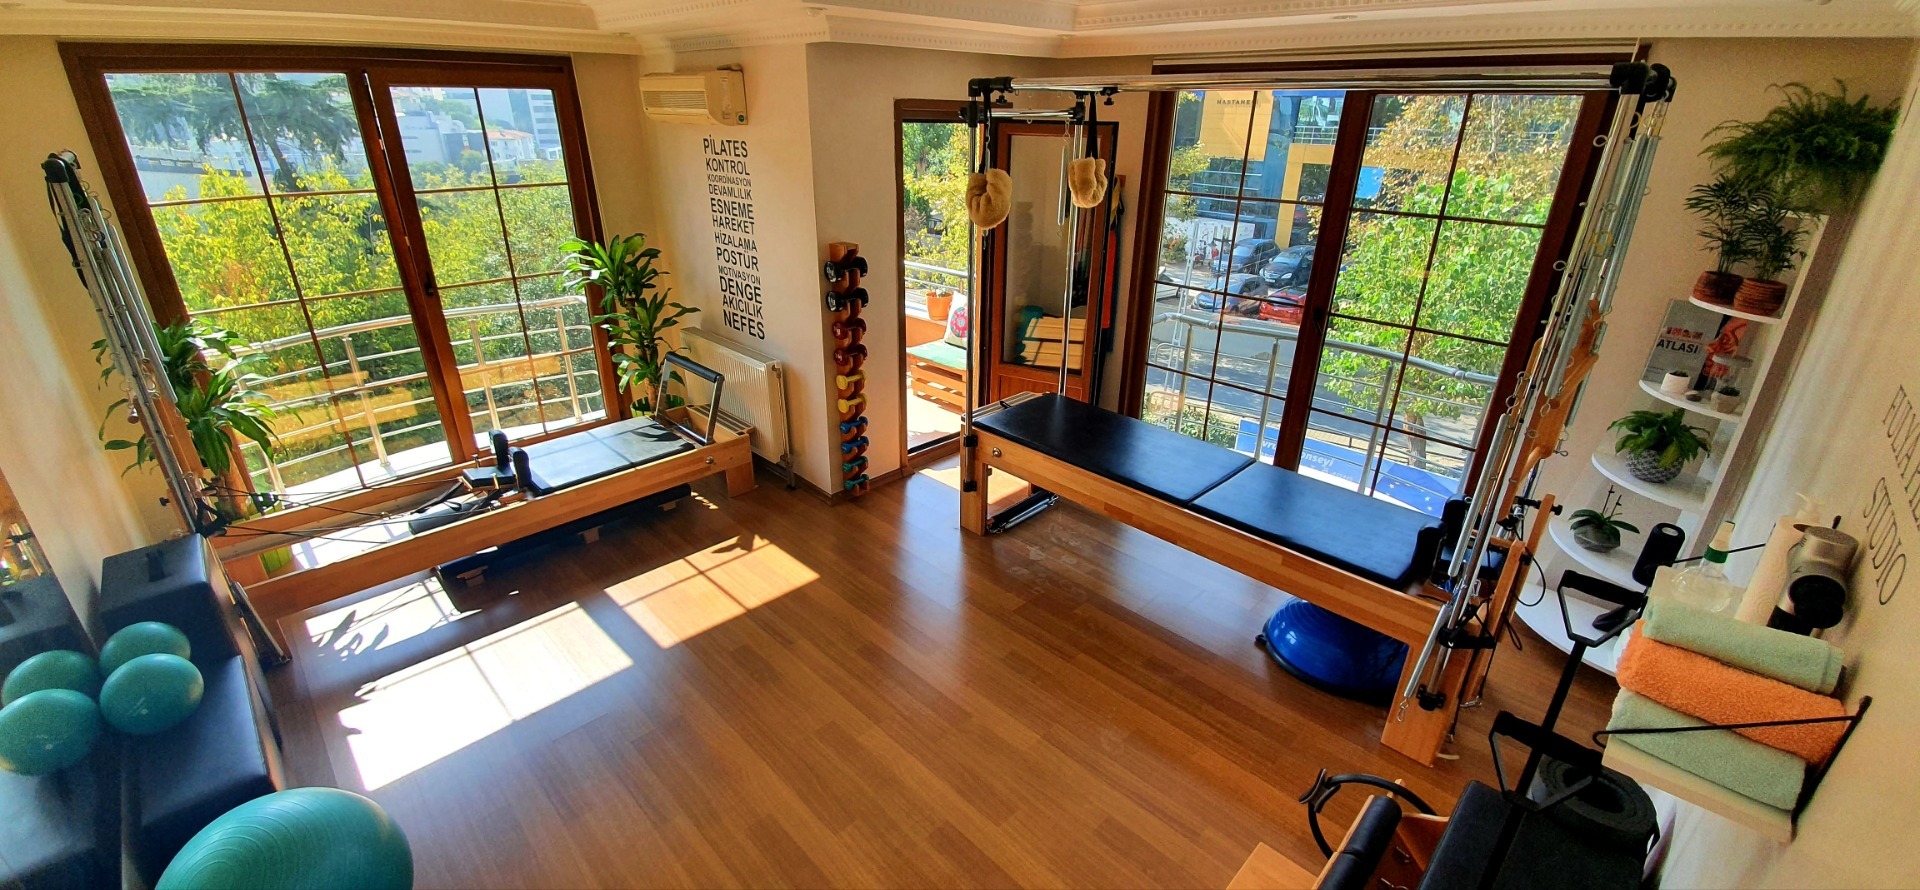 Pilates ve fitness özel ders salonu